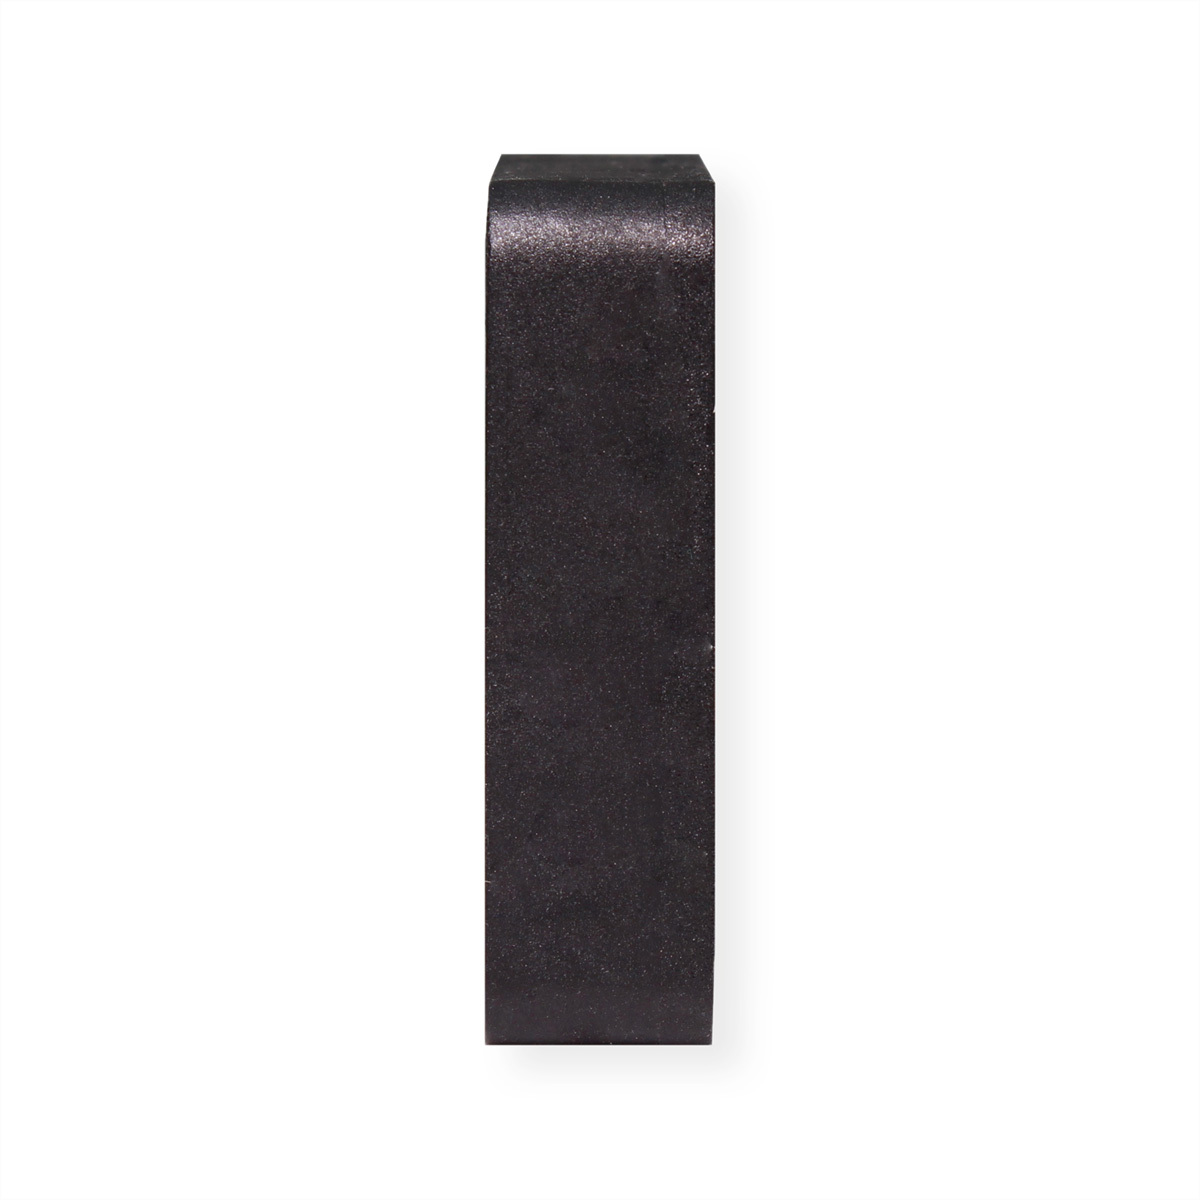 XILENCE XPF40.W 40mm Gehäuselüfter, schwarz White Box 3PIN, Lüfter